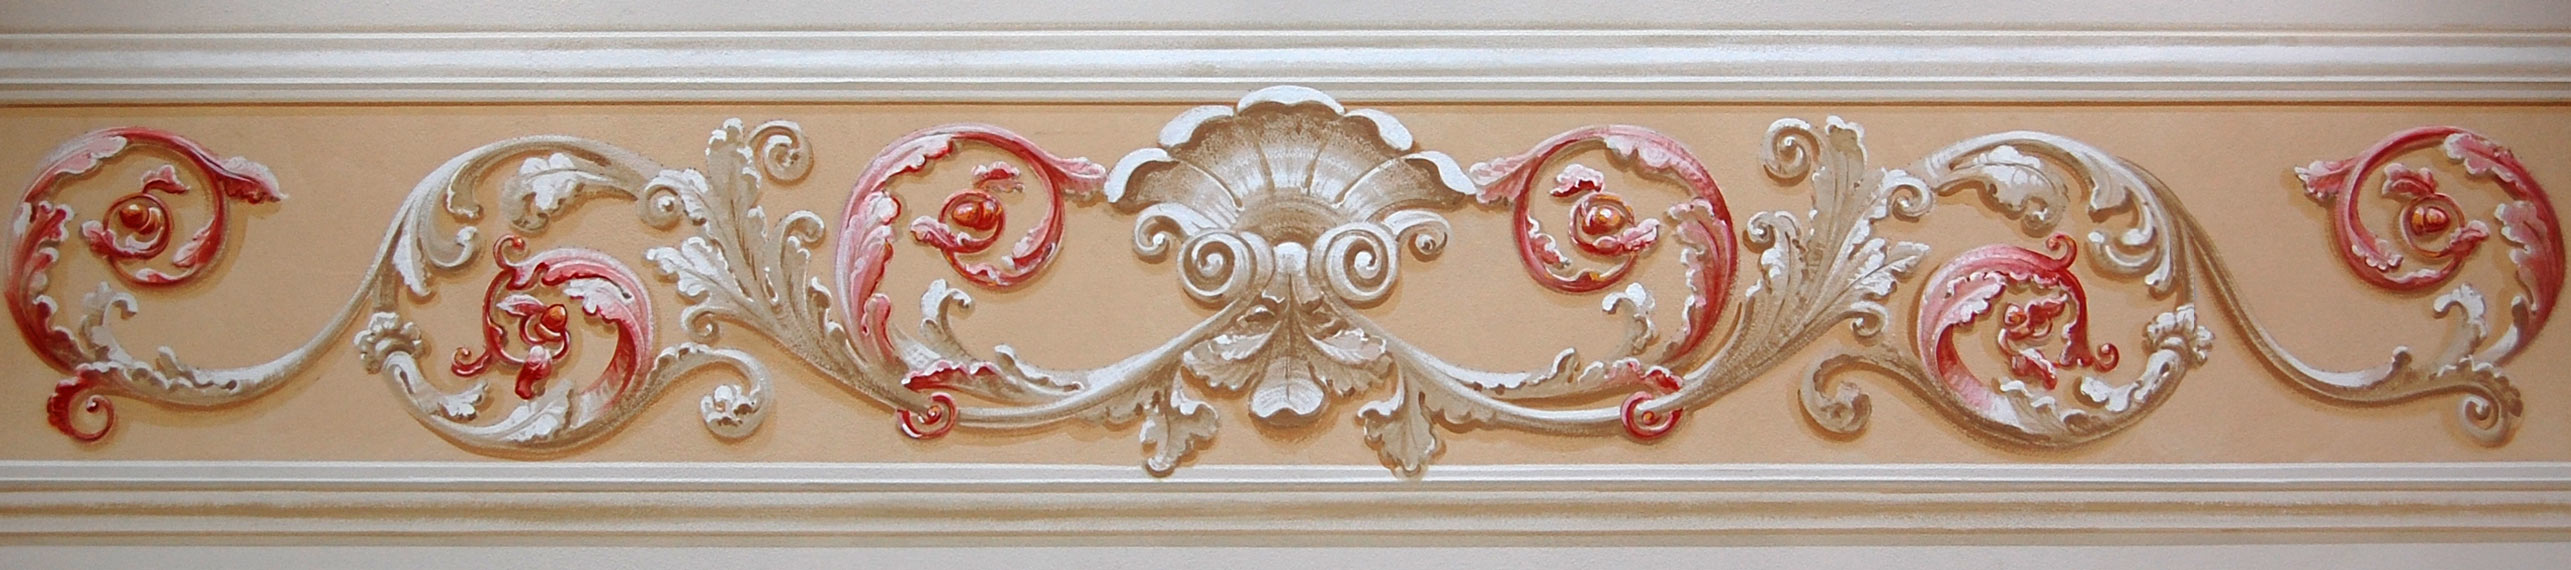 decorazione classica con girali e cornici